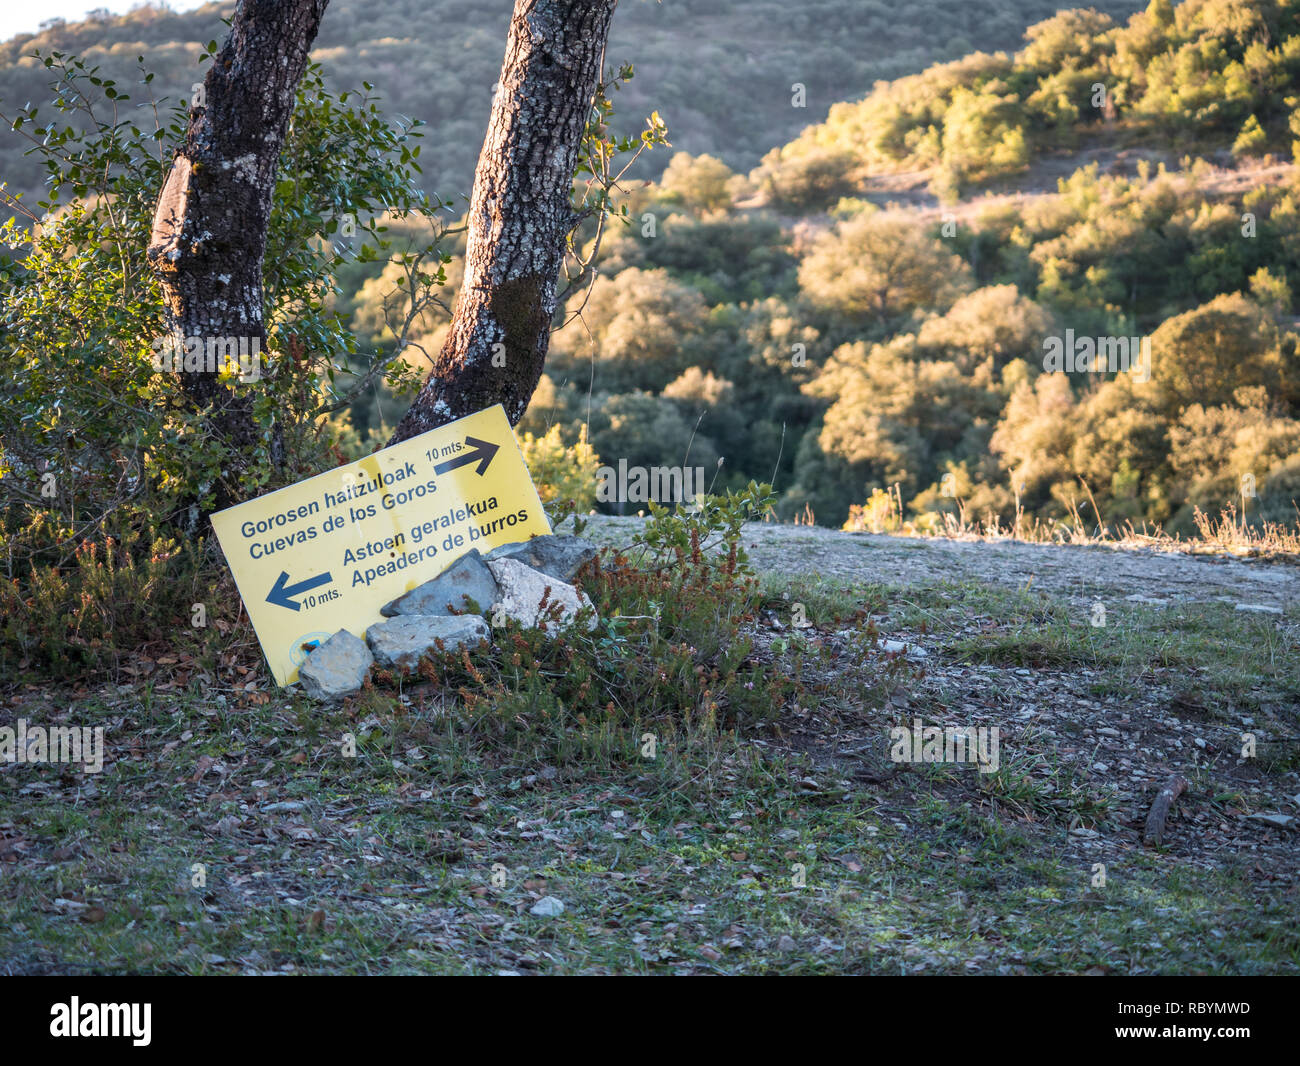 Cartello giallo messo a terra fra le pietre e gli alberi. Il segno indica la Los Goros grotta sulla destra a. l'area di ormeggio per gli asini sulla sinistra Foto Stock